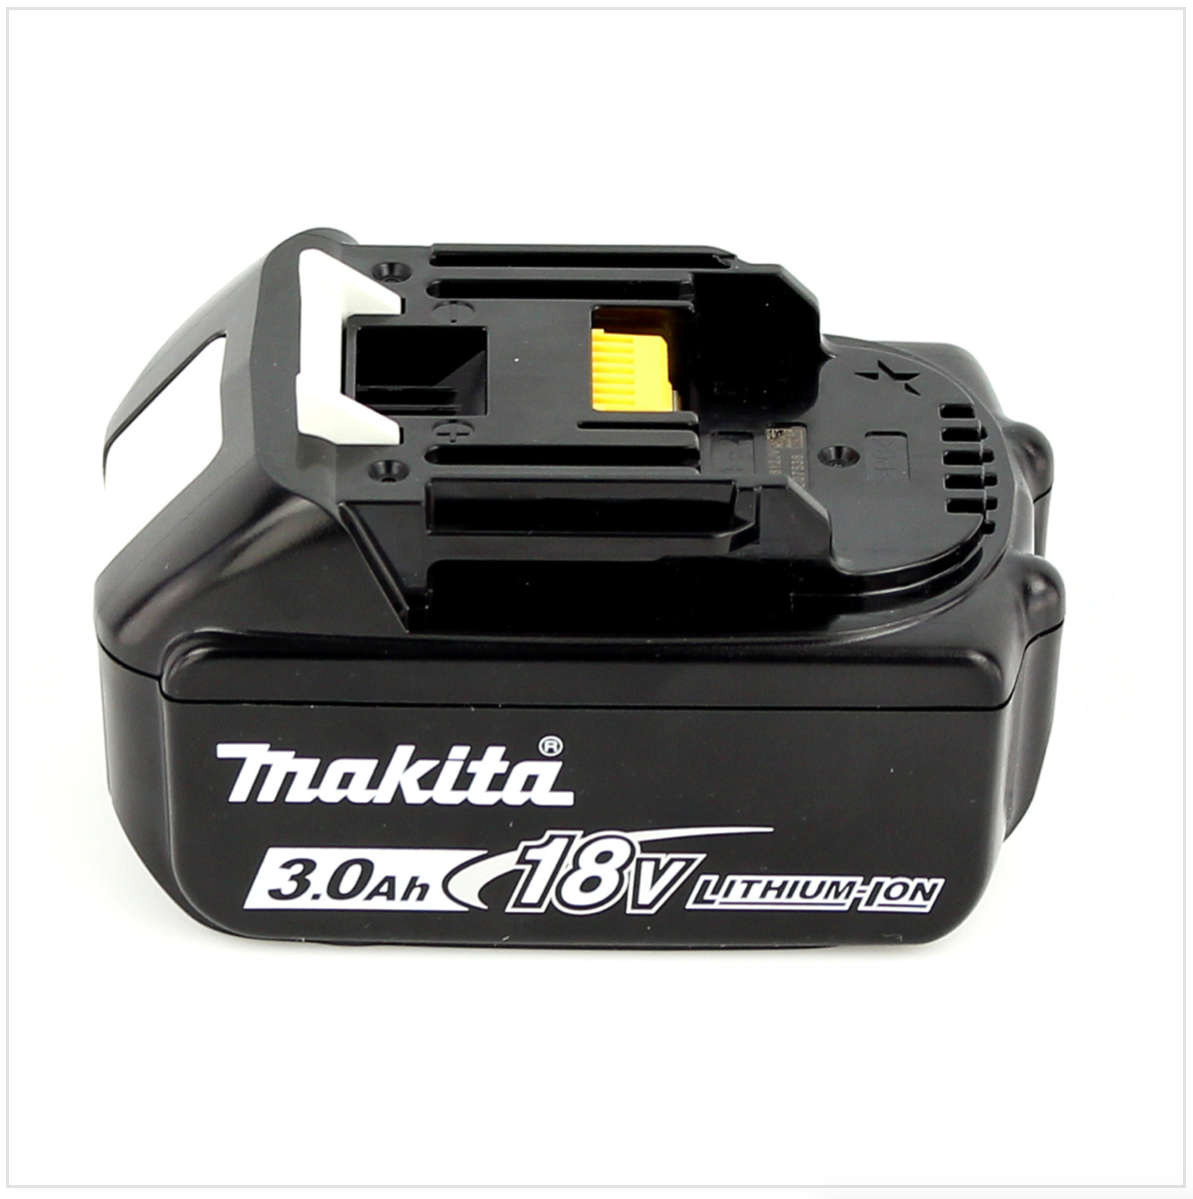 Makita DEADML / DML 805 LED Baustrahler 14,4 - 18 Volt / 230 Volt + 1x  3Ah Li-Ion Akku - Toolbrothers